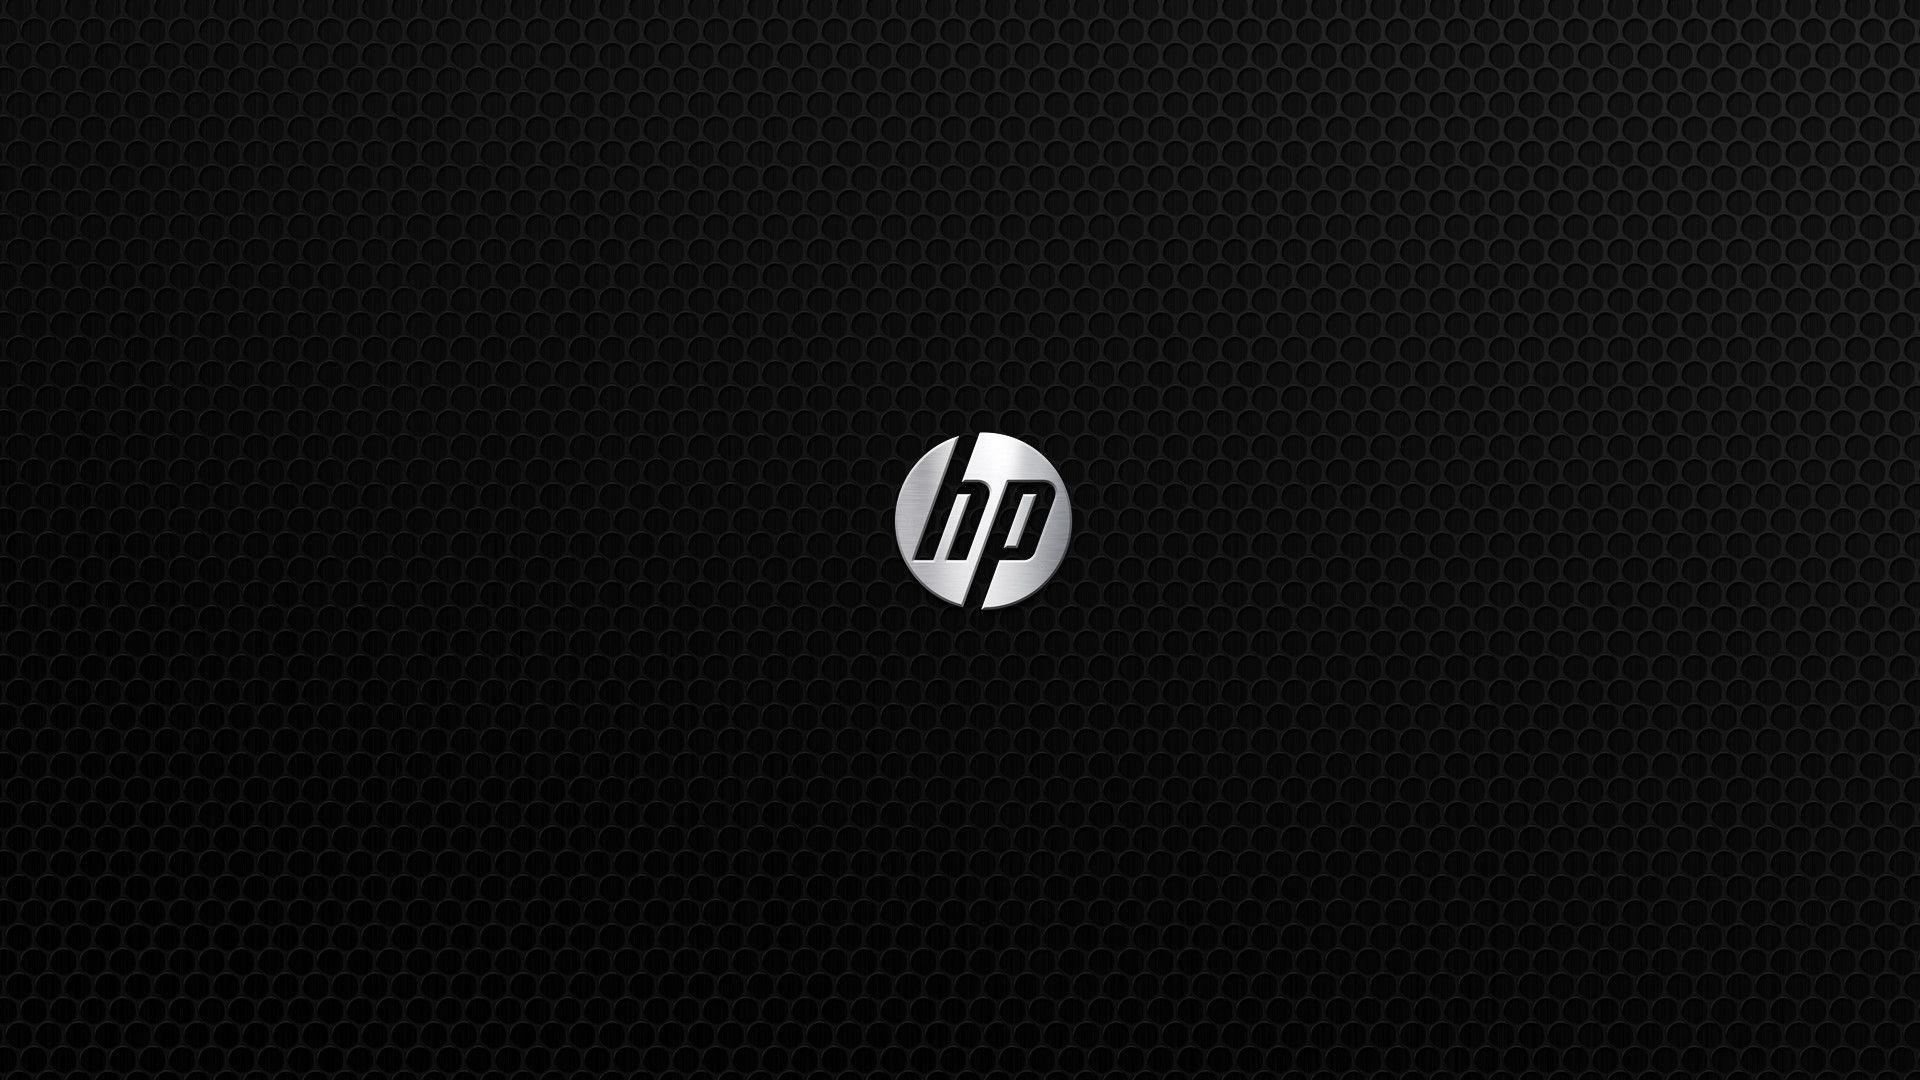 Hewlett Packard Enterprise Wallpaper